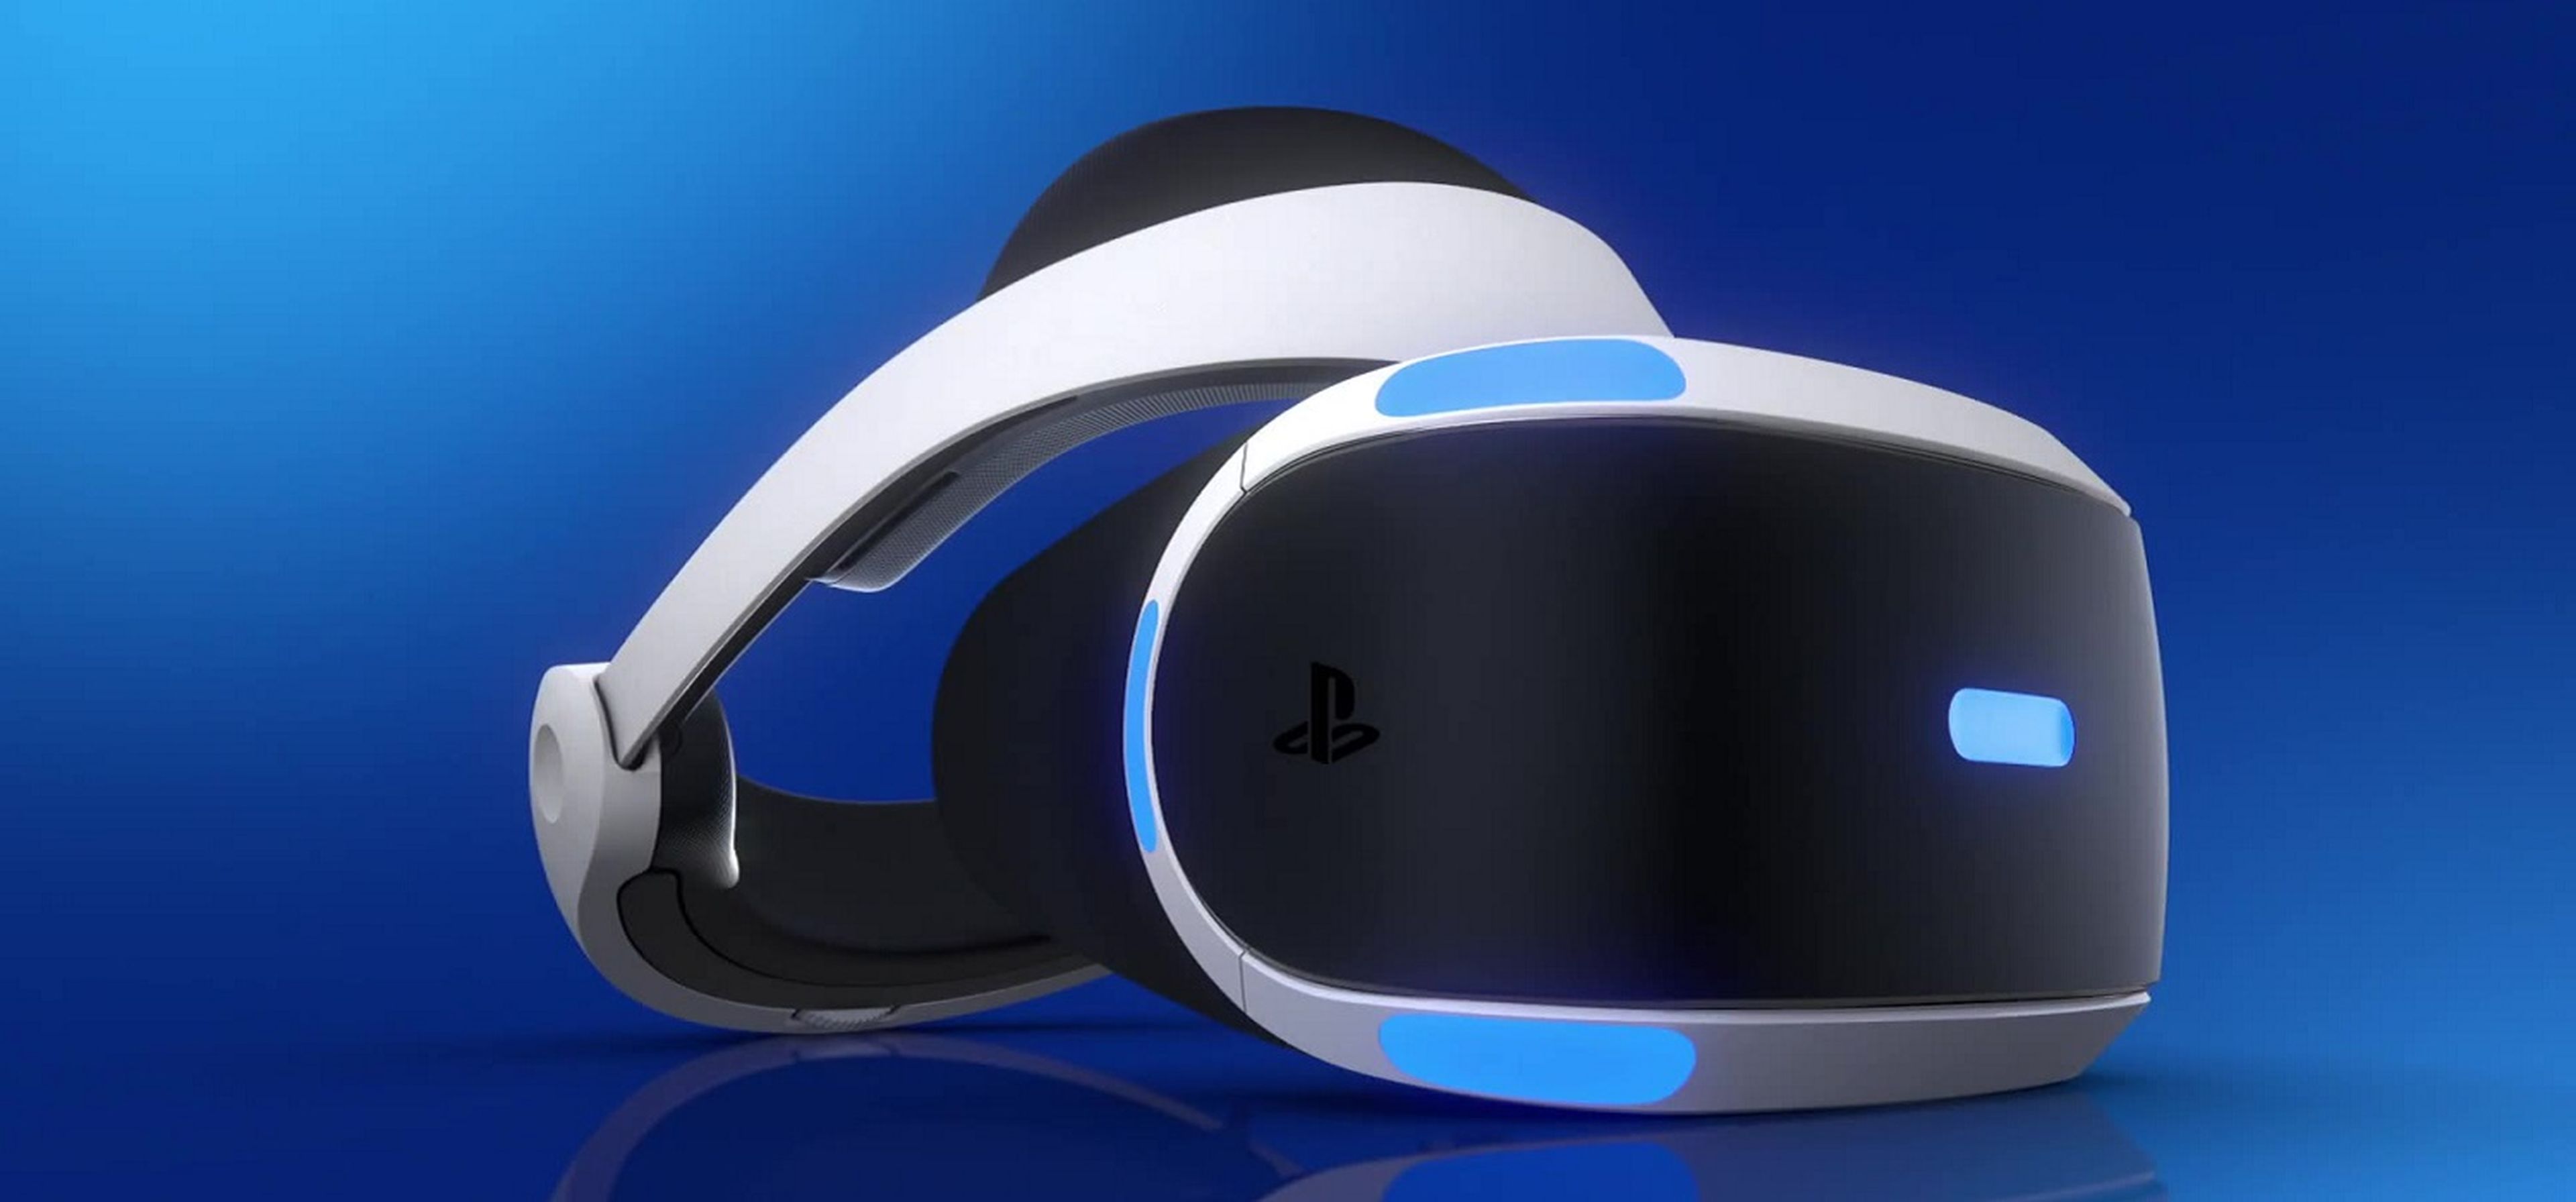 Hazte con este megapack de PlayStation VR a precio de ganga: las